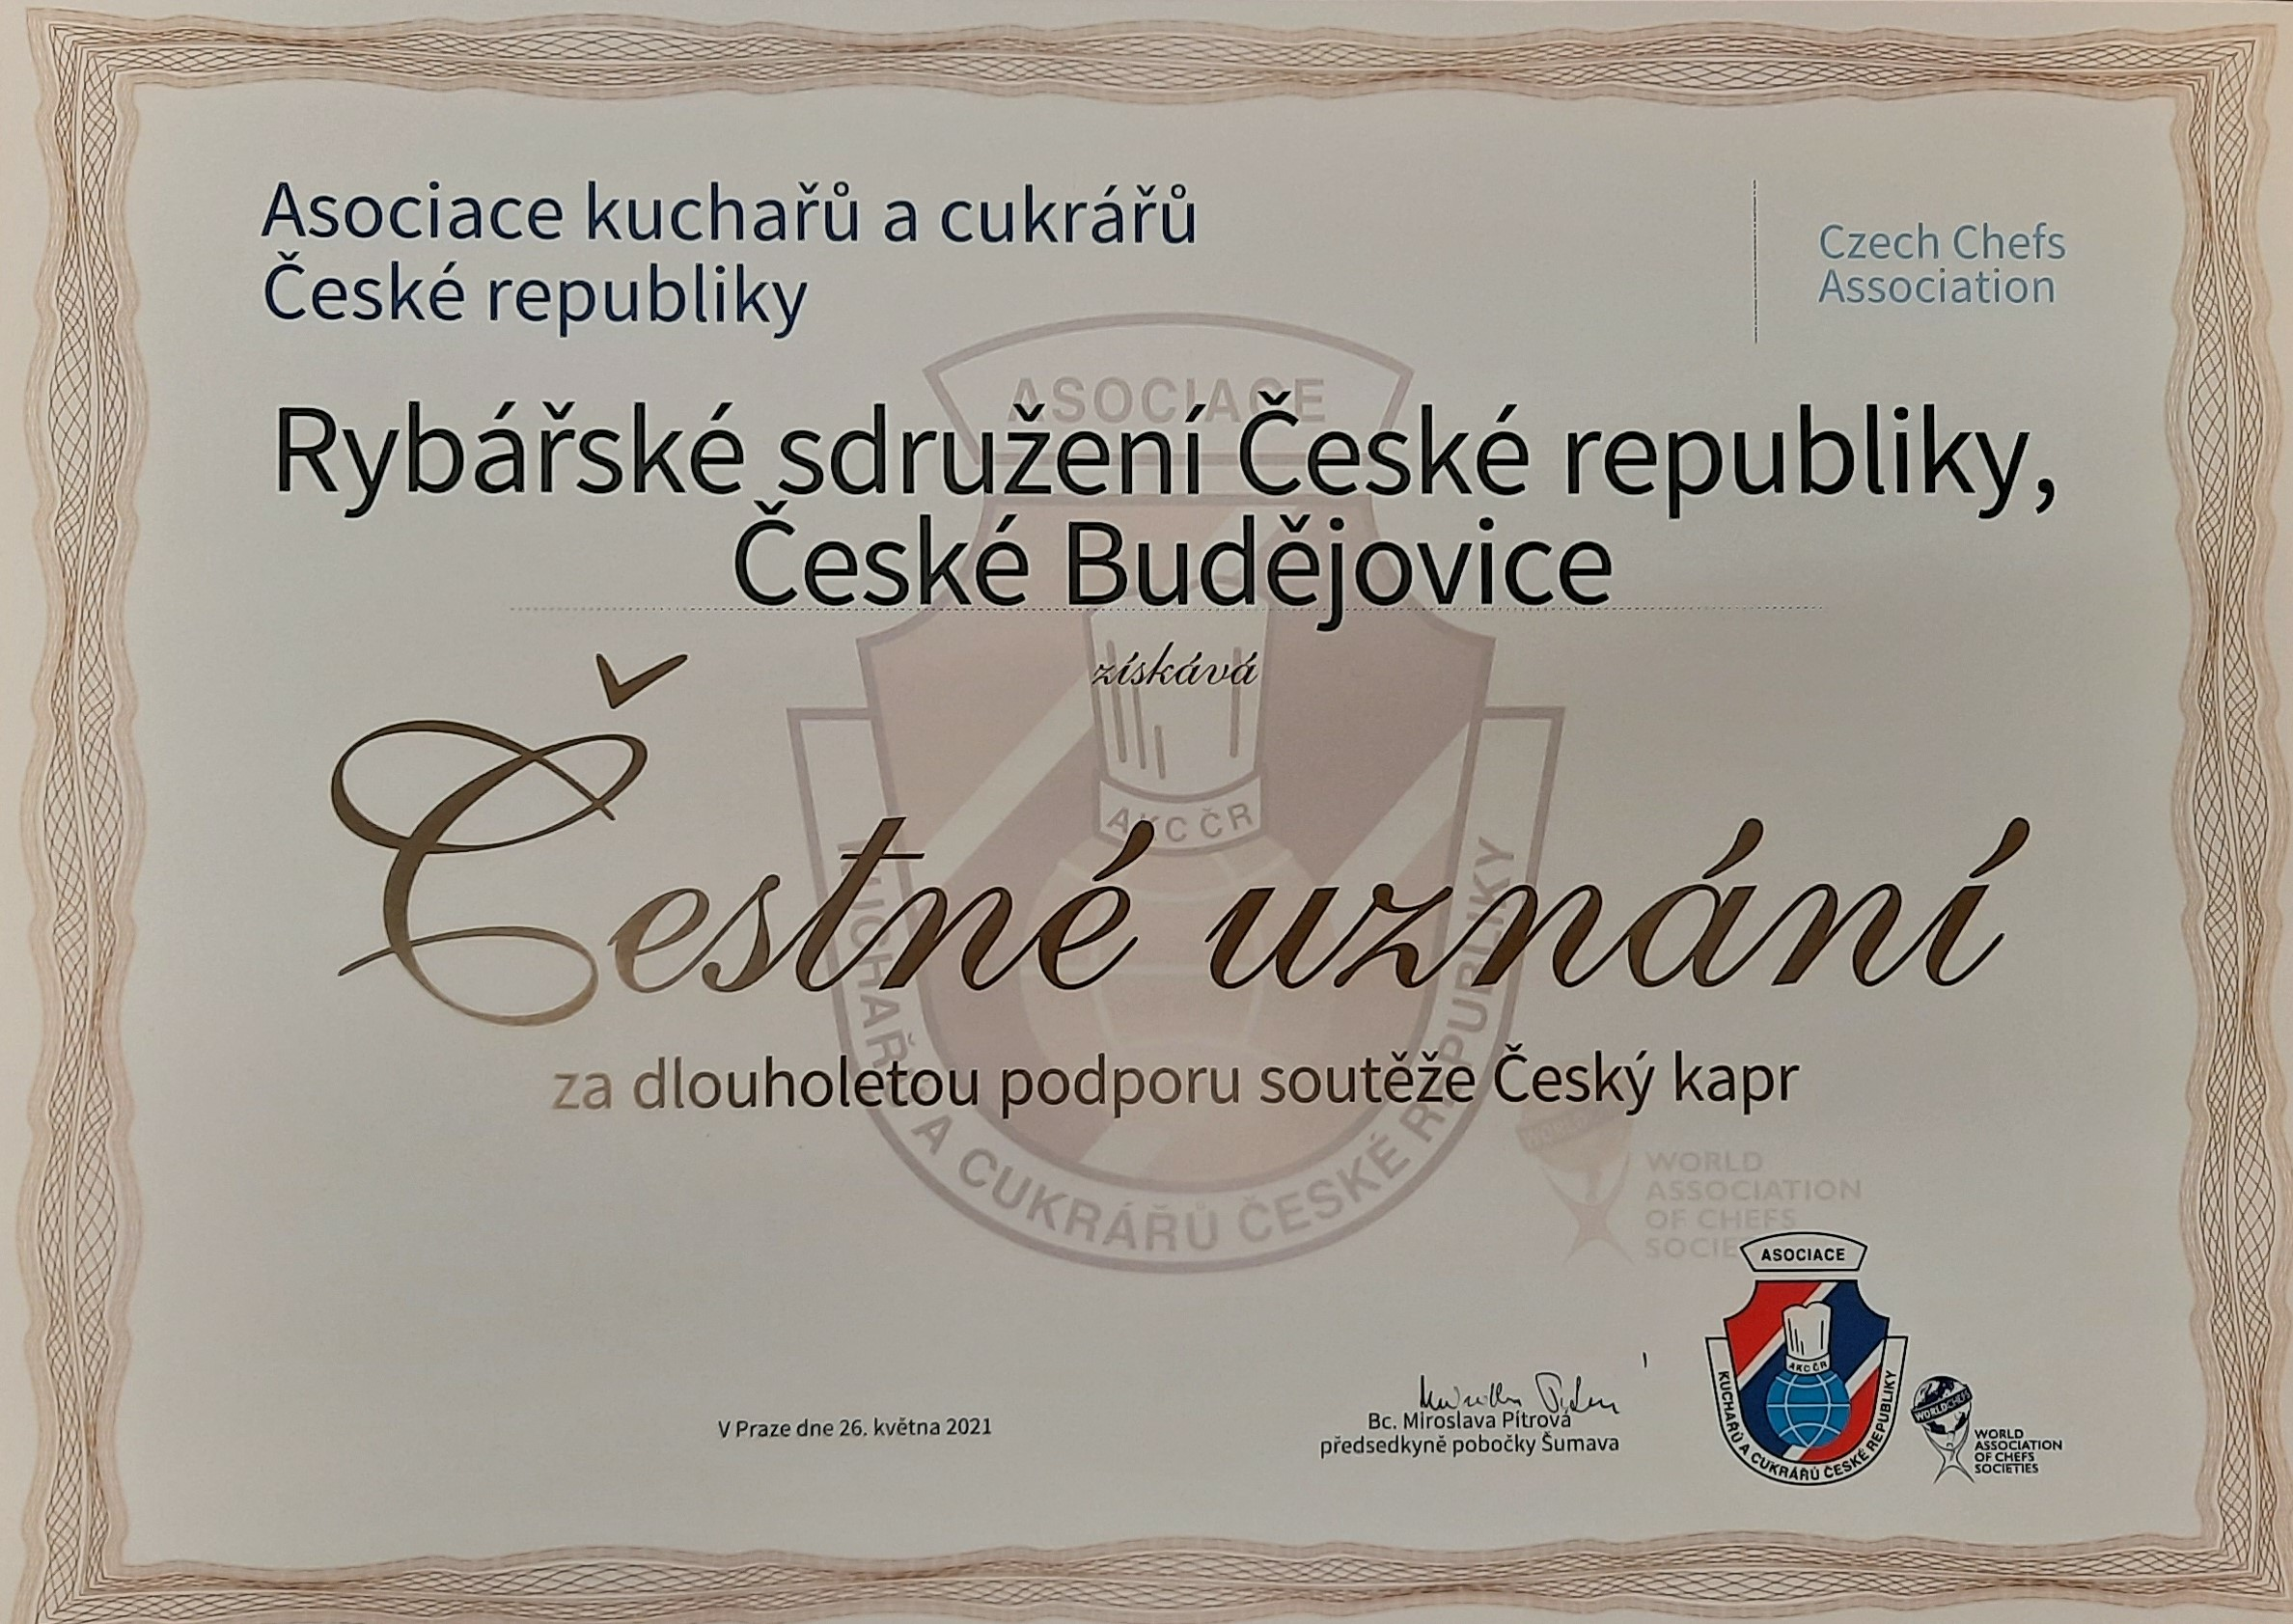 Rybářské sdružení ČR obdrželo Čestné uznání za dlouholetou podporu soutěže Český kapr